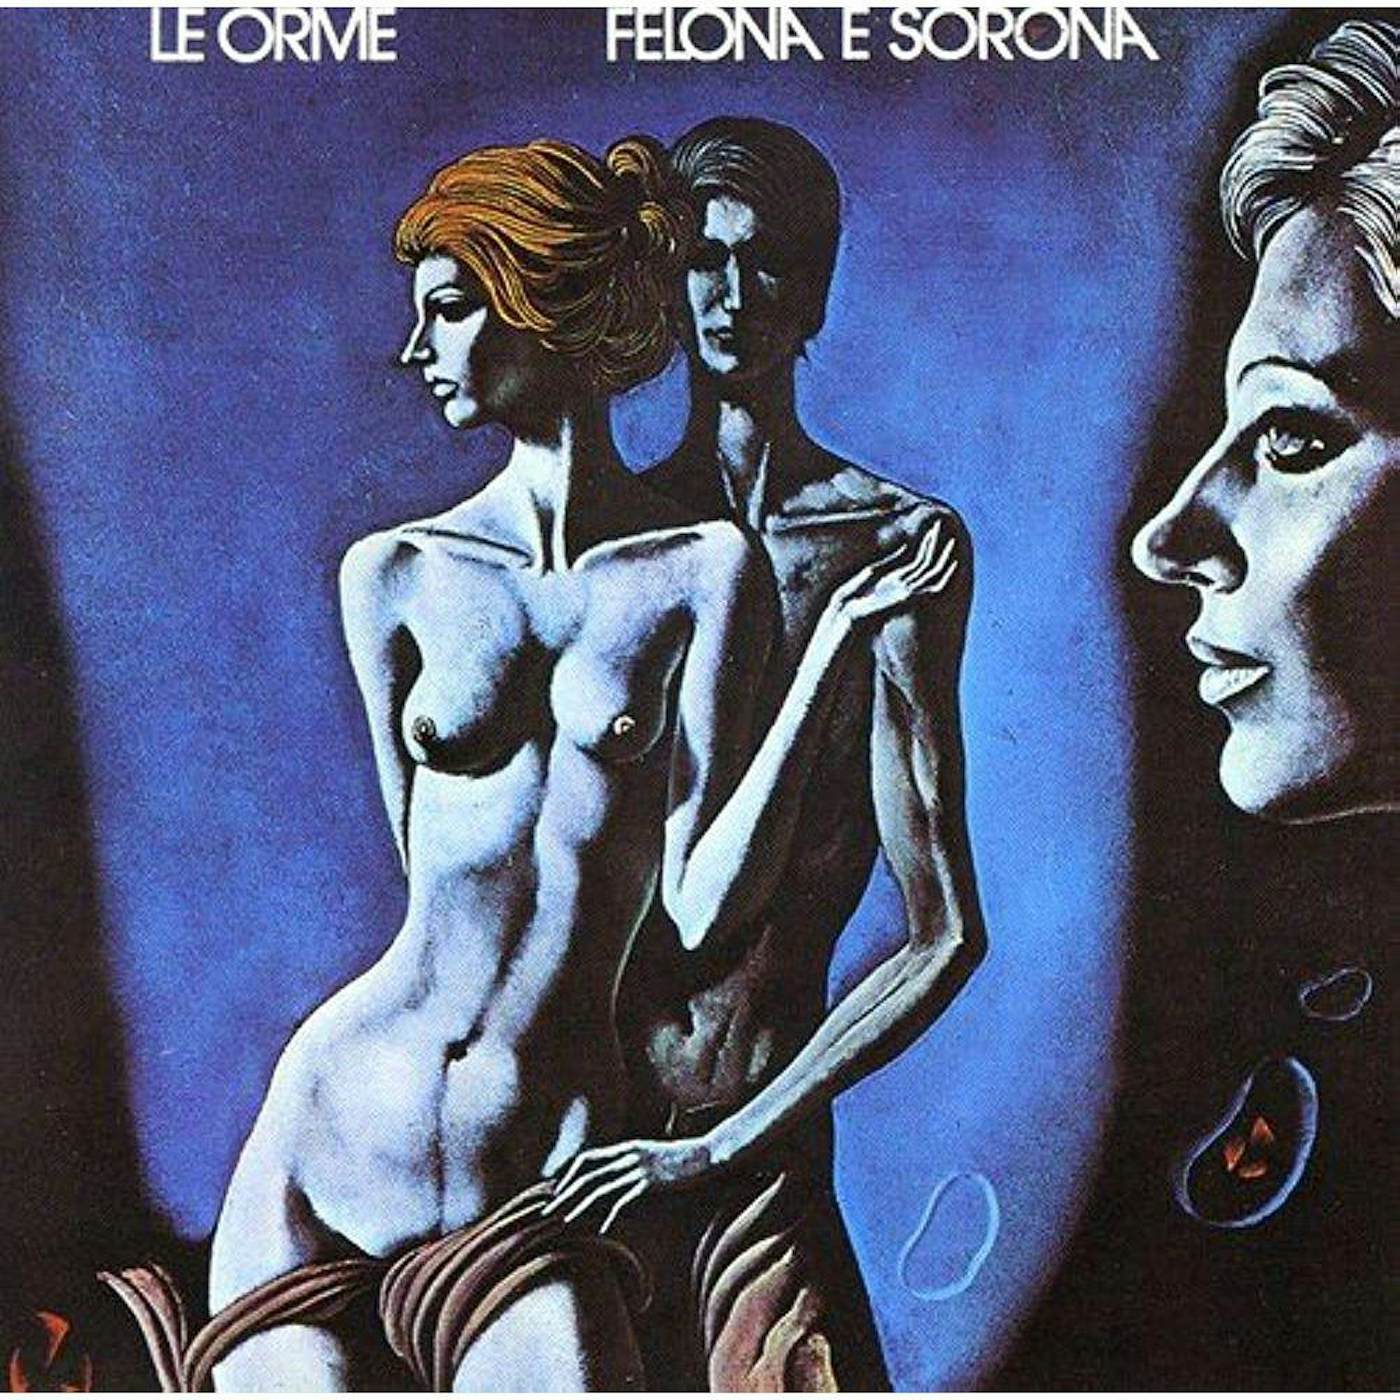 Le Orme Felona E Sorona Vinyl Record